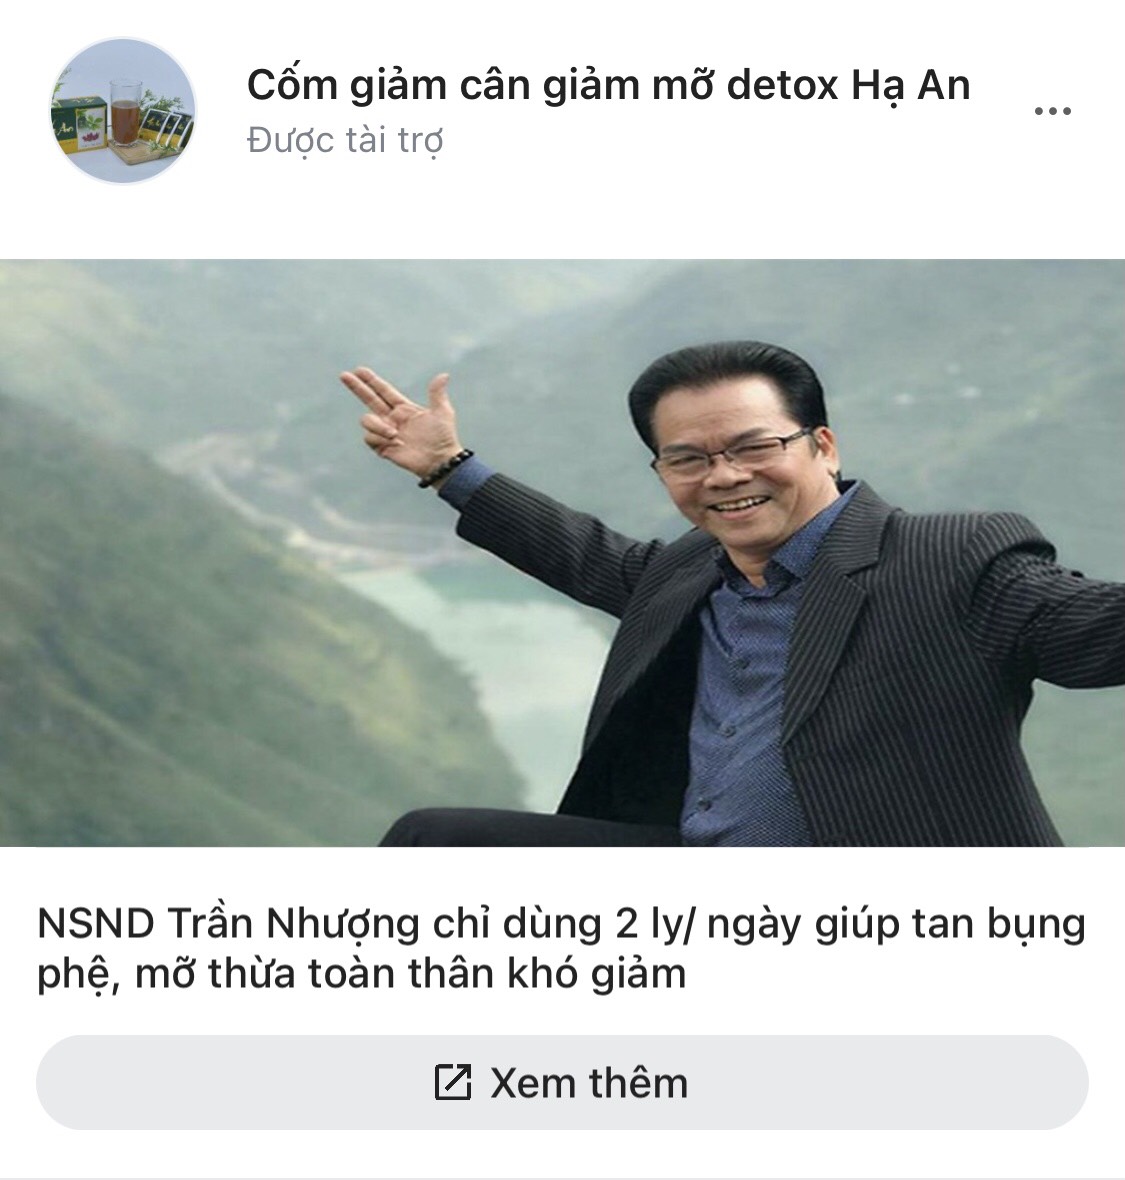 NSND Trần Nhượng tiếp tay quảng cáo sản phẩm thổi phồng công dụng lừa dối người tiêu dùng